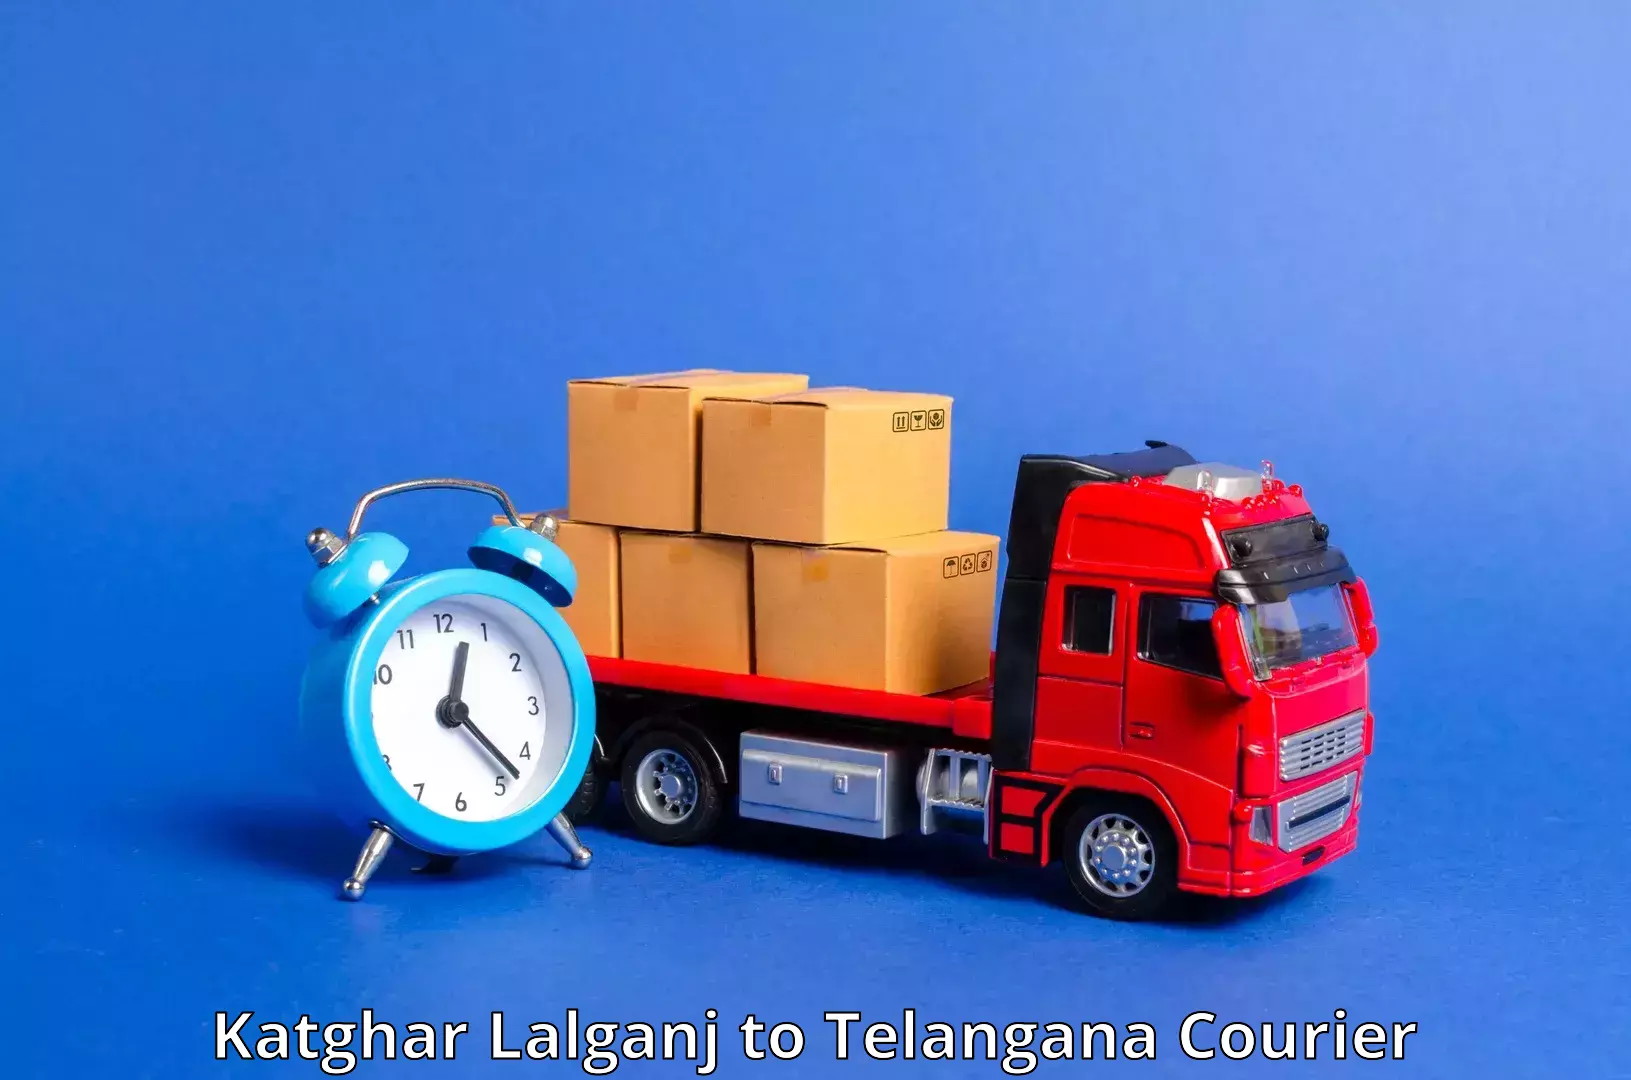 Lightweight parcel options Katghar Lalganj to Secunderabad